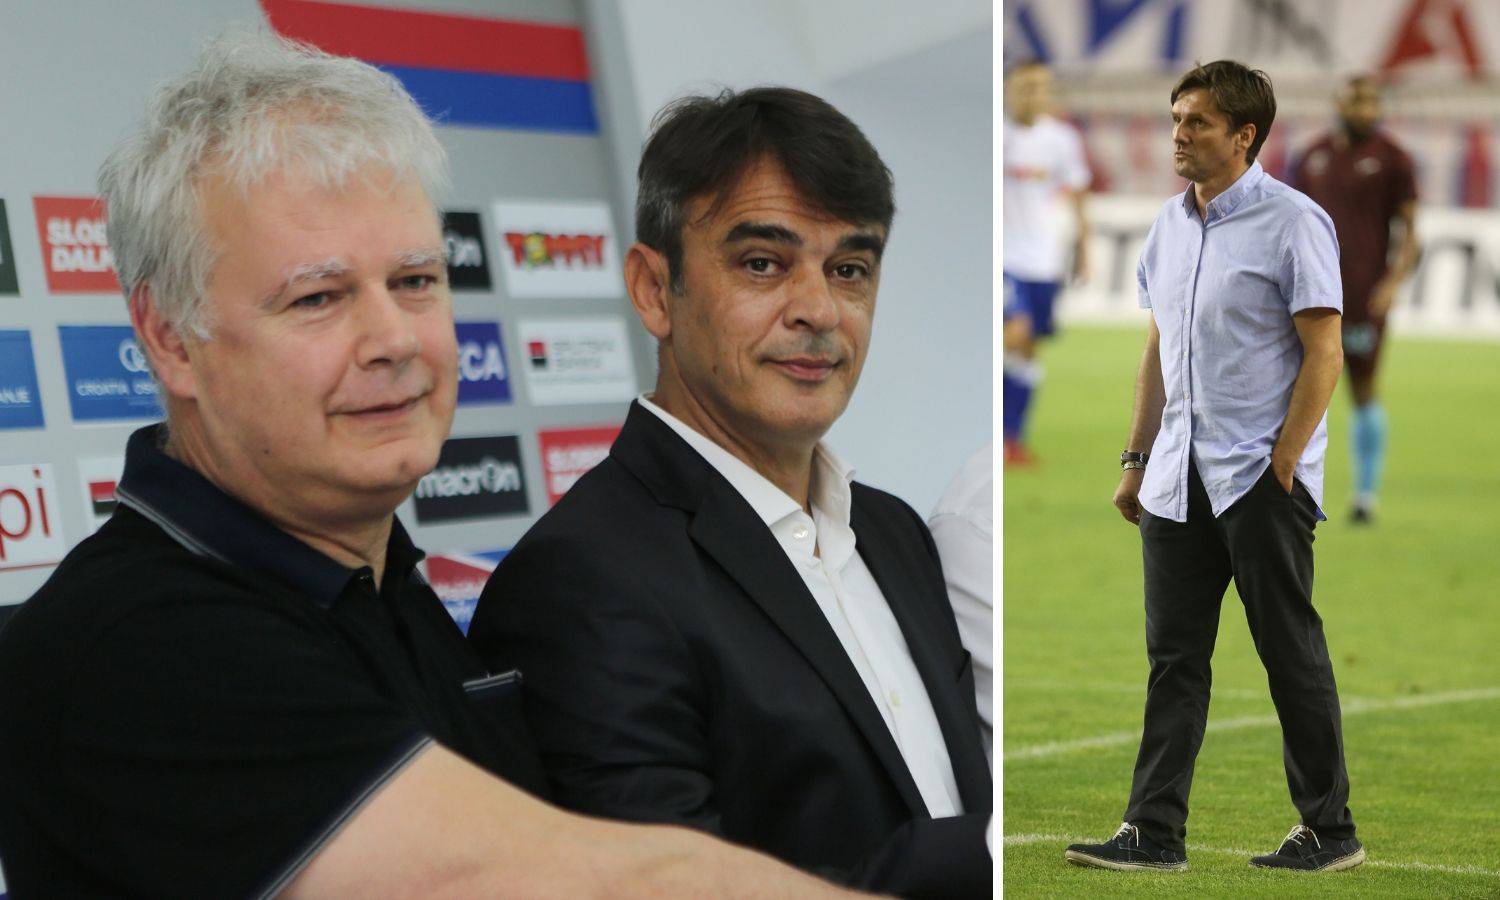 Novog predsjednika Hajduka na Poljudu čeka 'nemoguća misija'